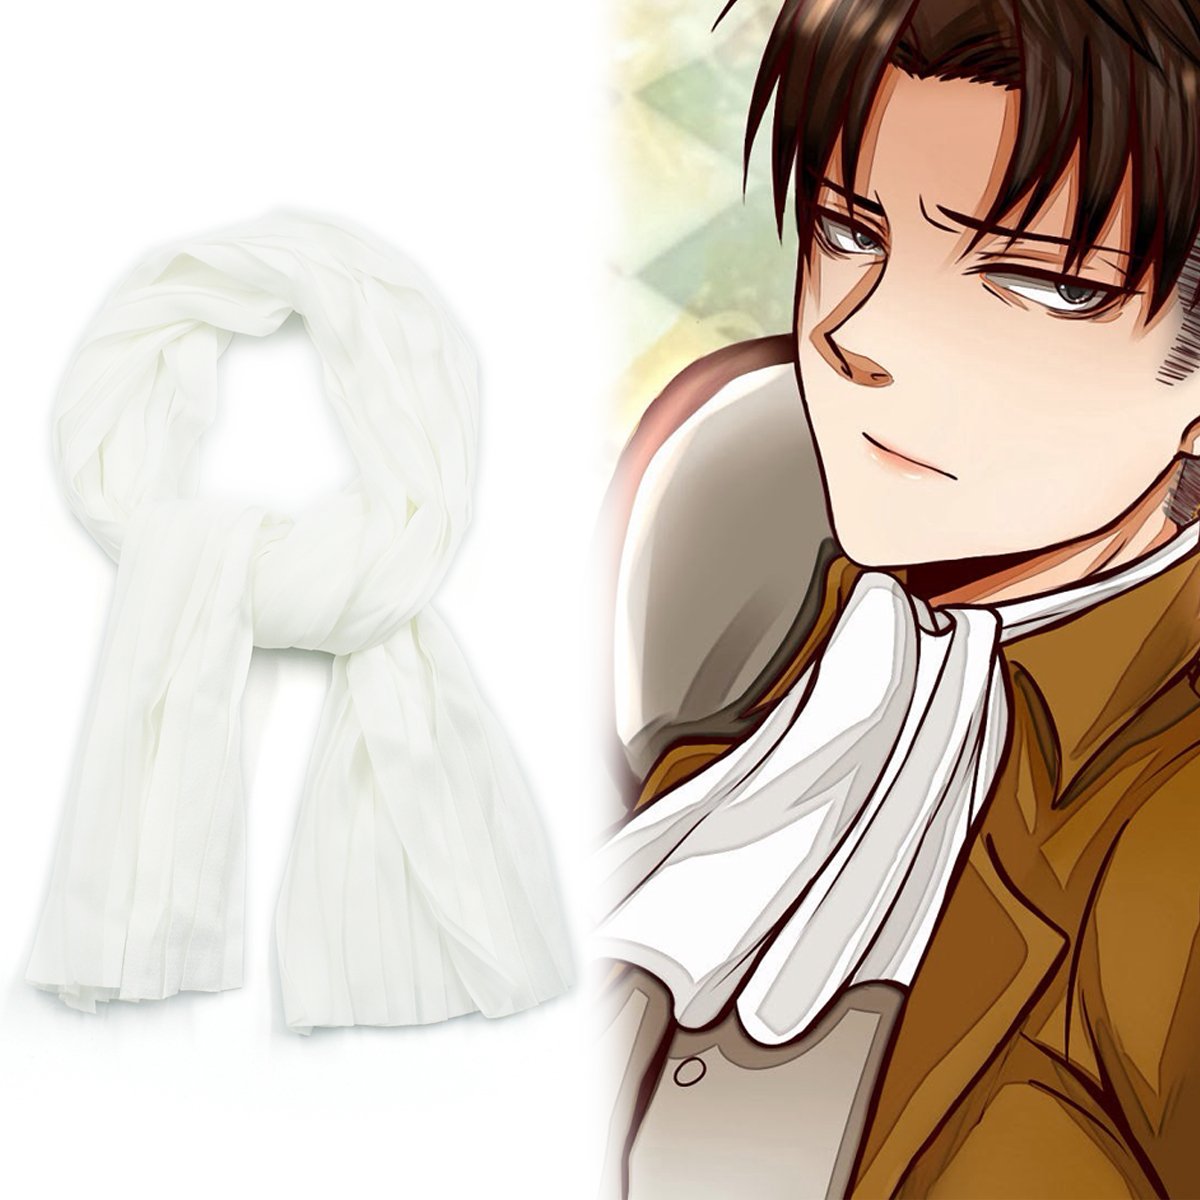 Mua White cosplay scarf by Levi Ackerman for Attack on Titan fans trên  Amazon Đức chính hãng 2023 | Giaonhan247